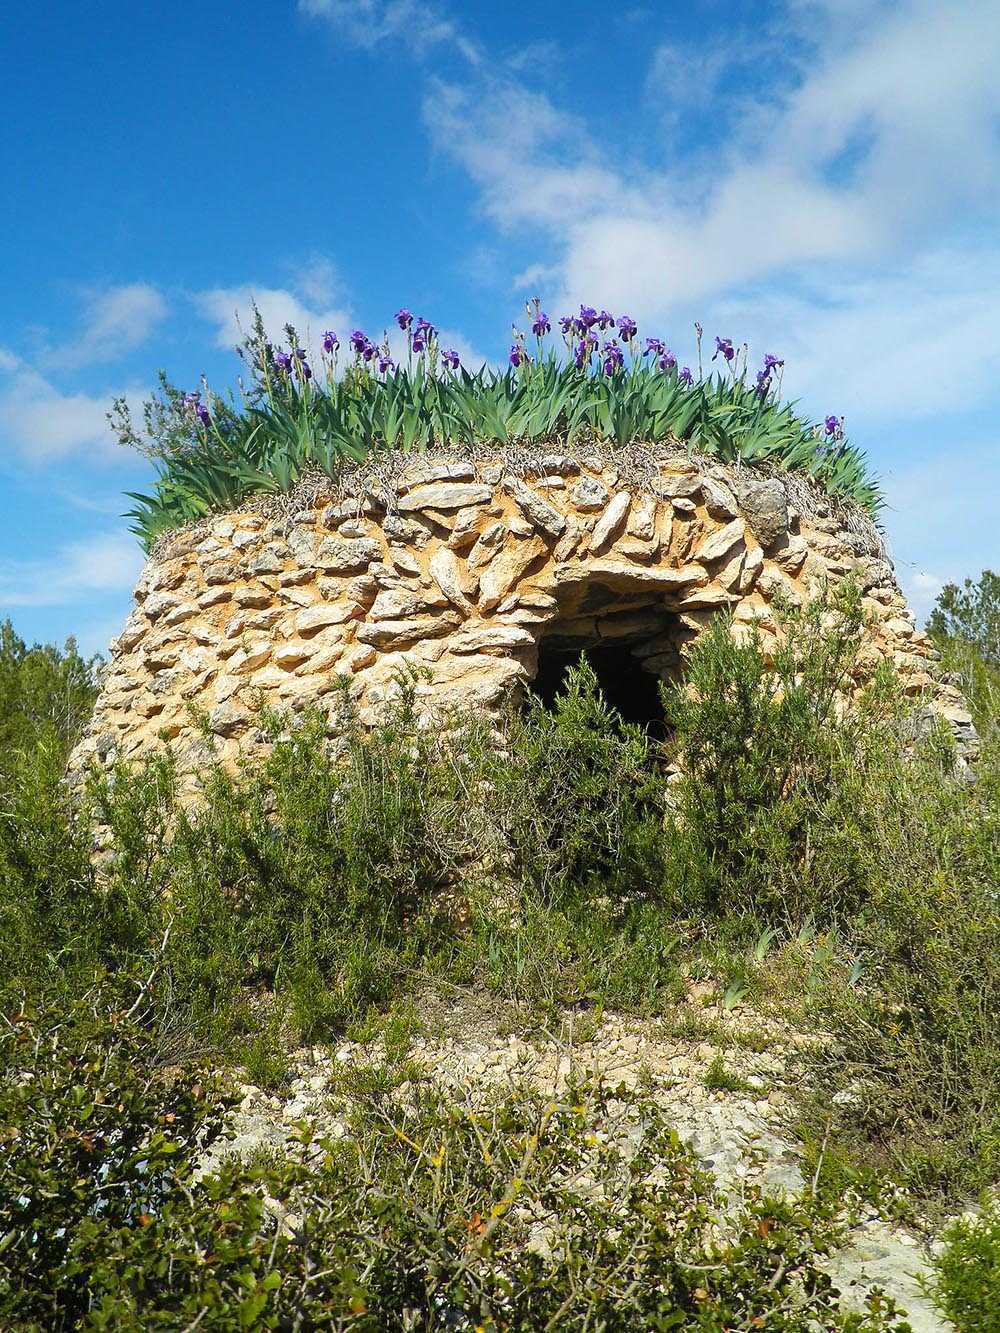 Les barraques de pedra seca de Viladellops